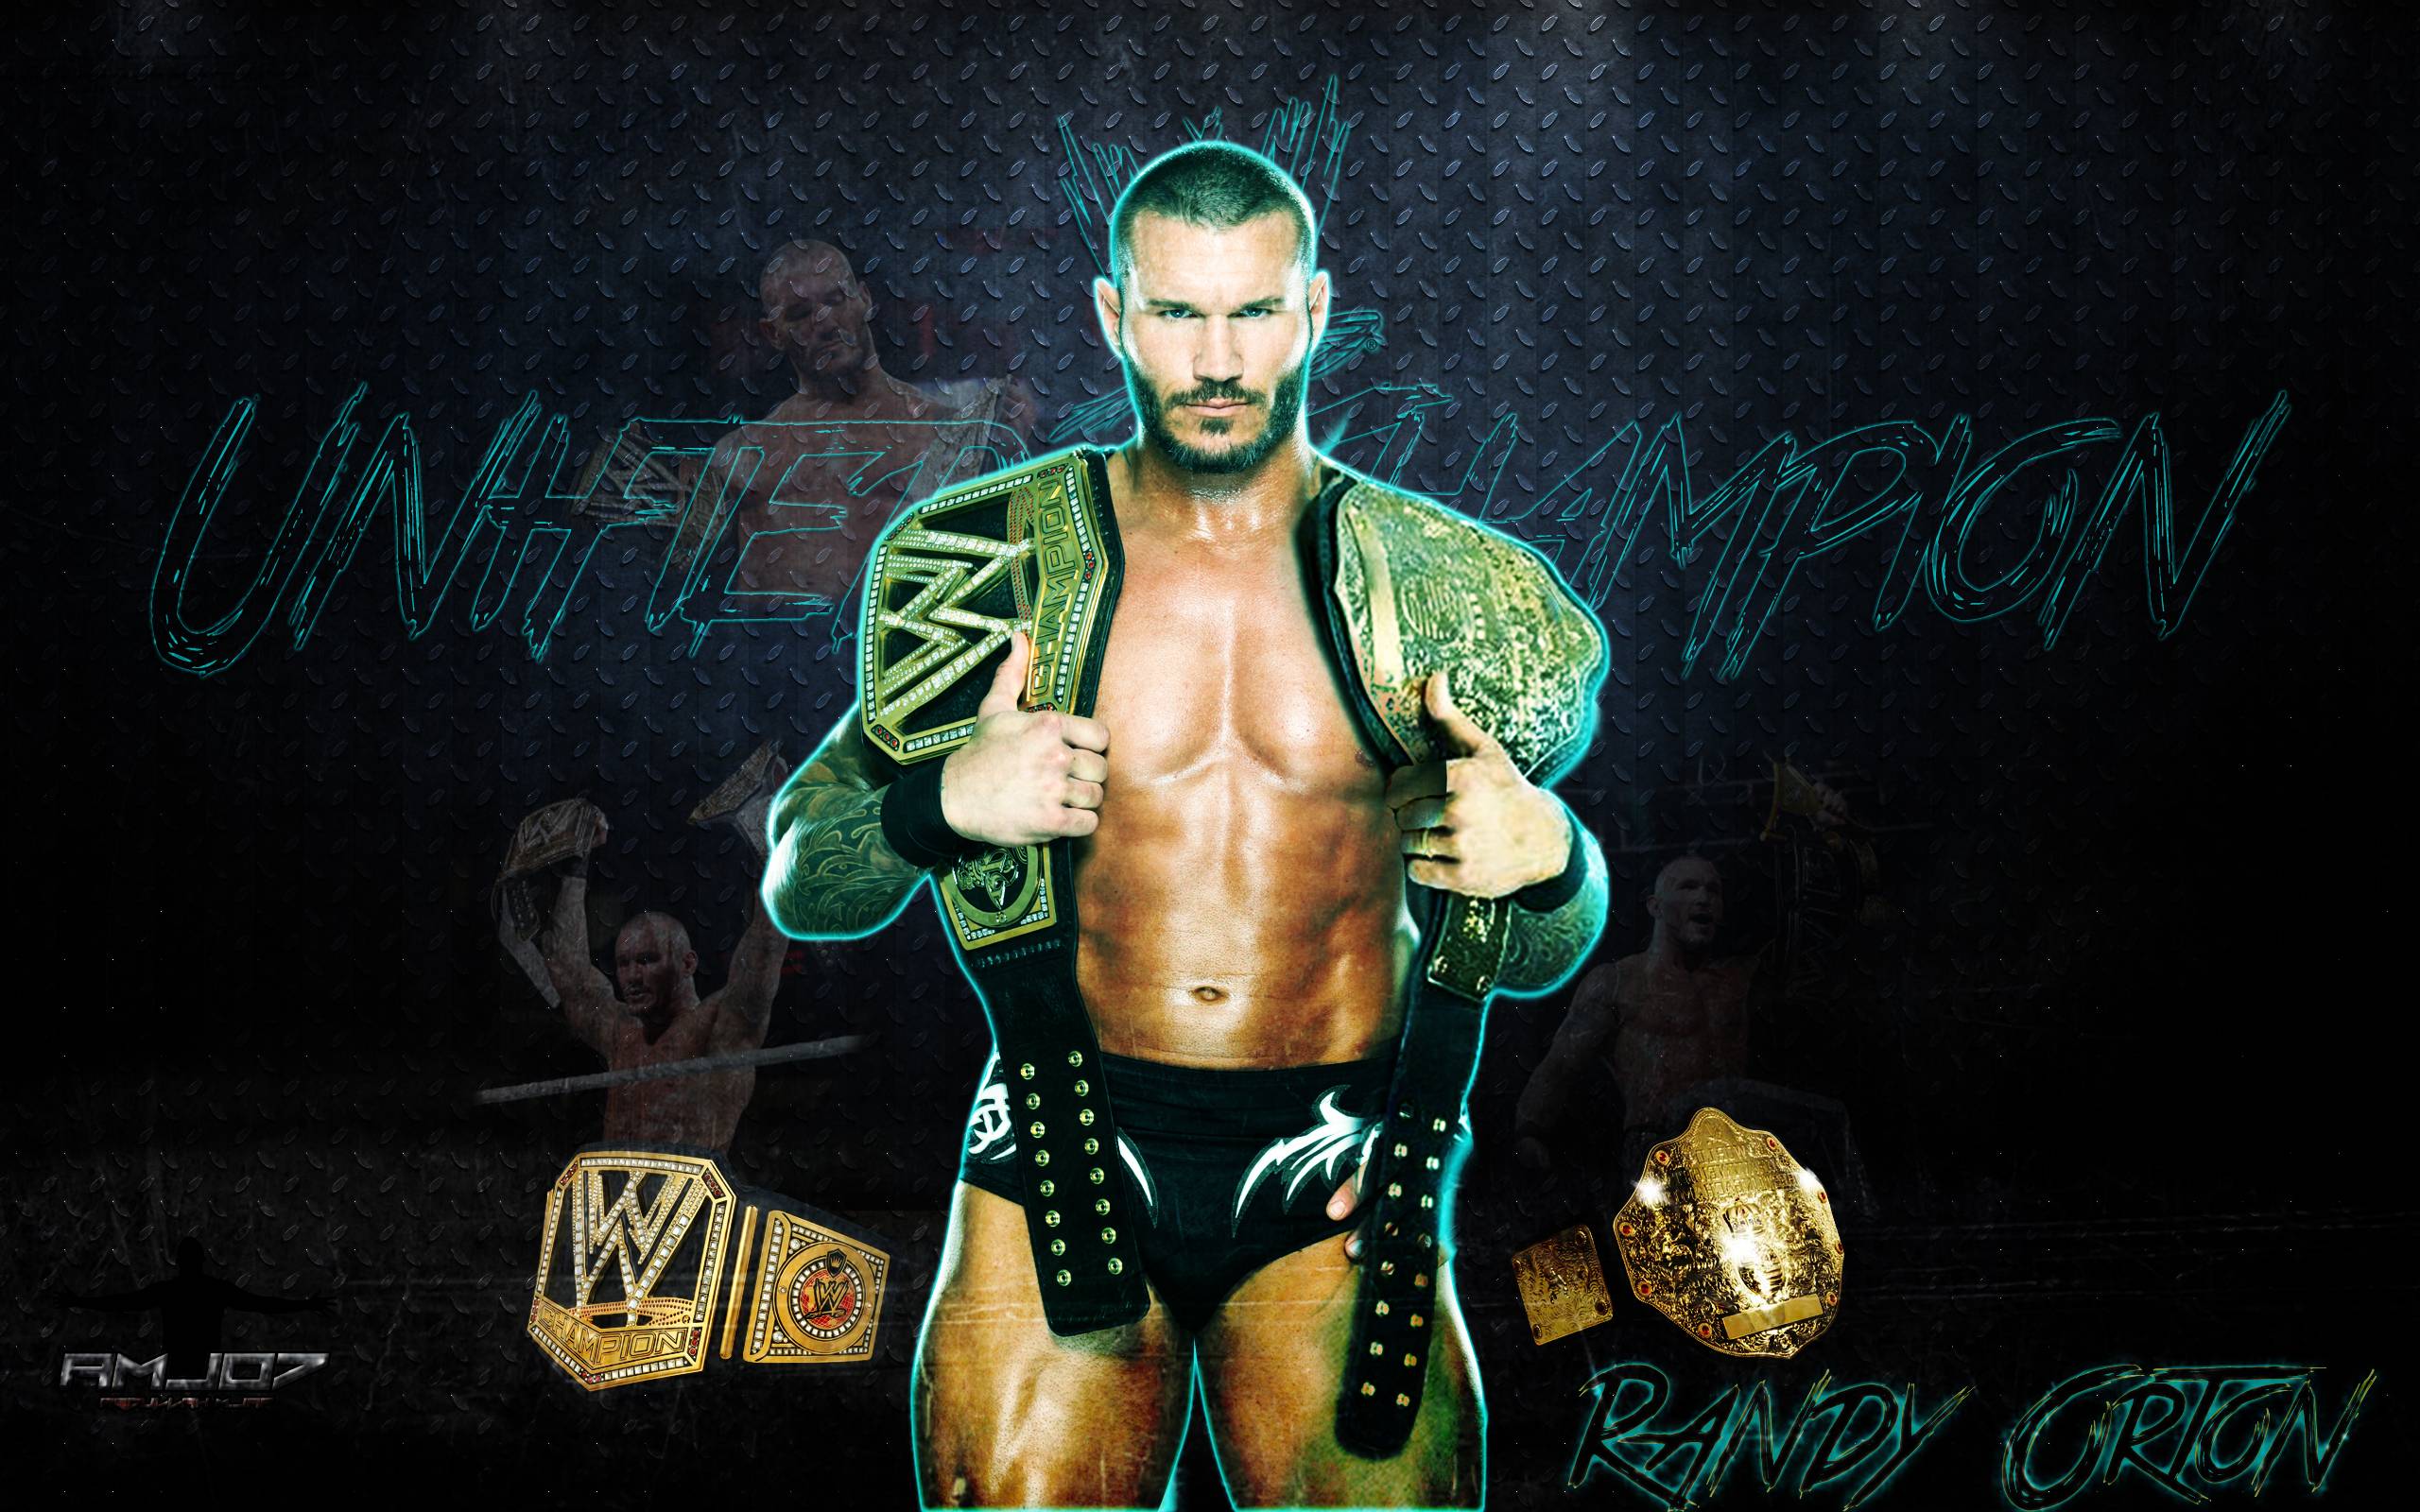 Randy Orton HD Wallpaper 2015